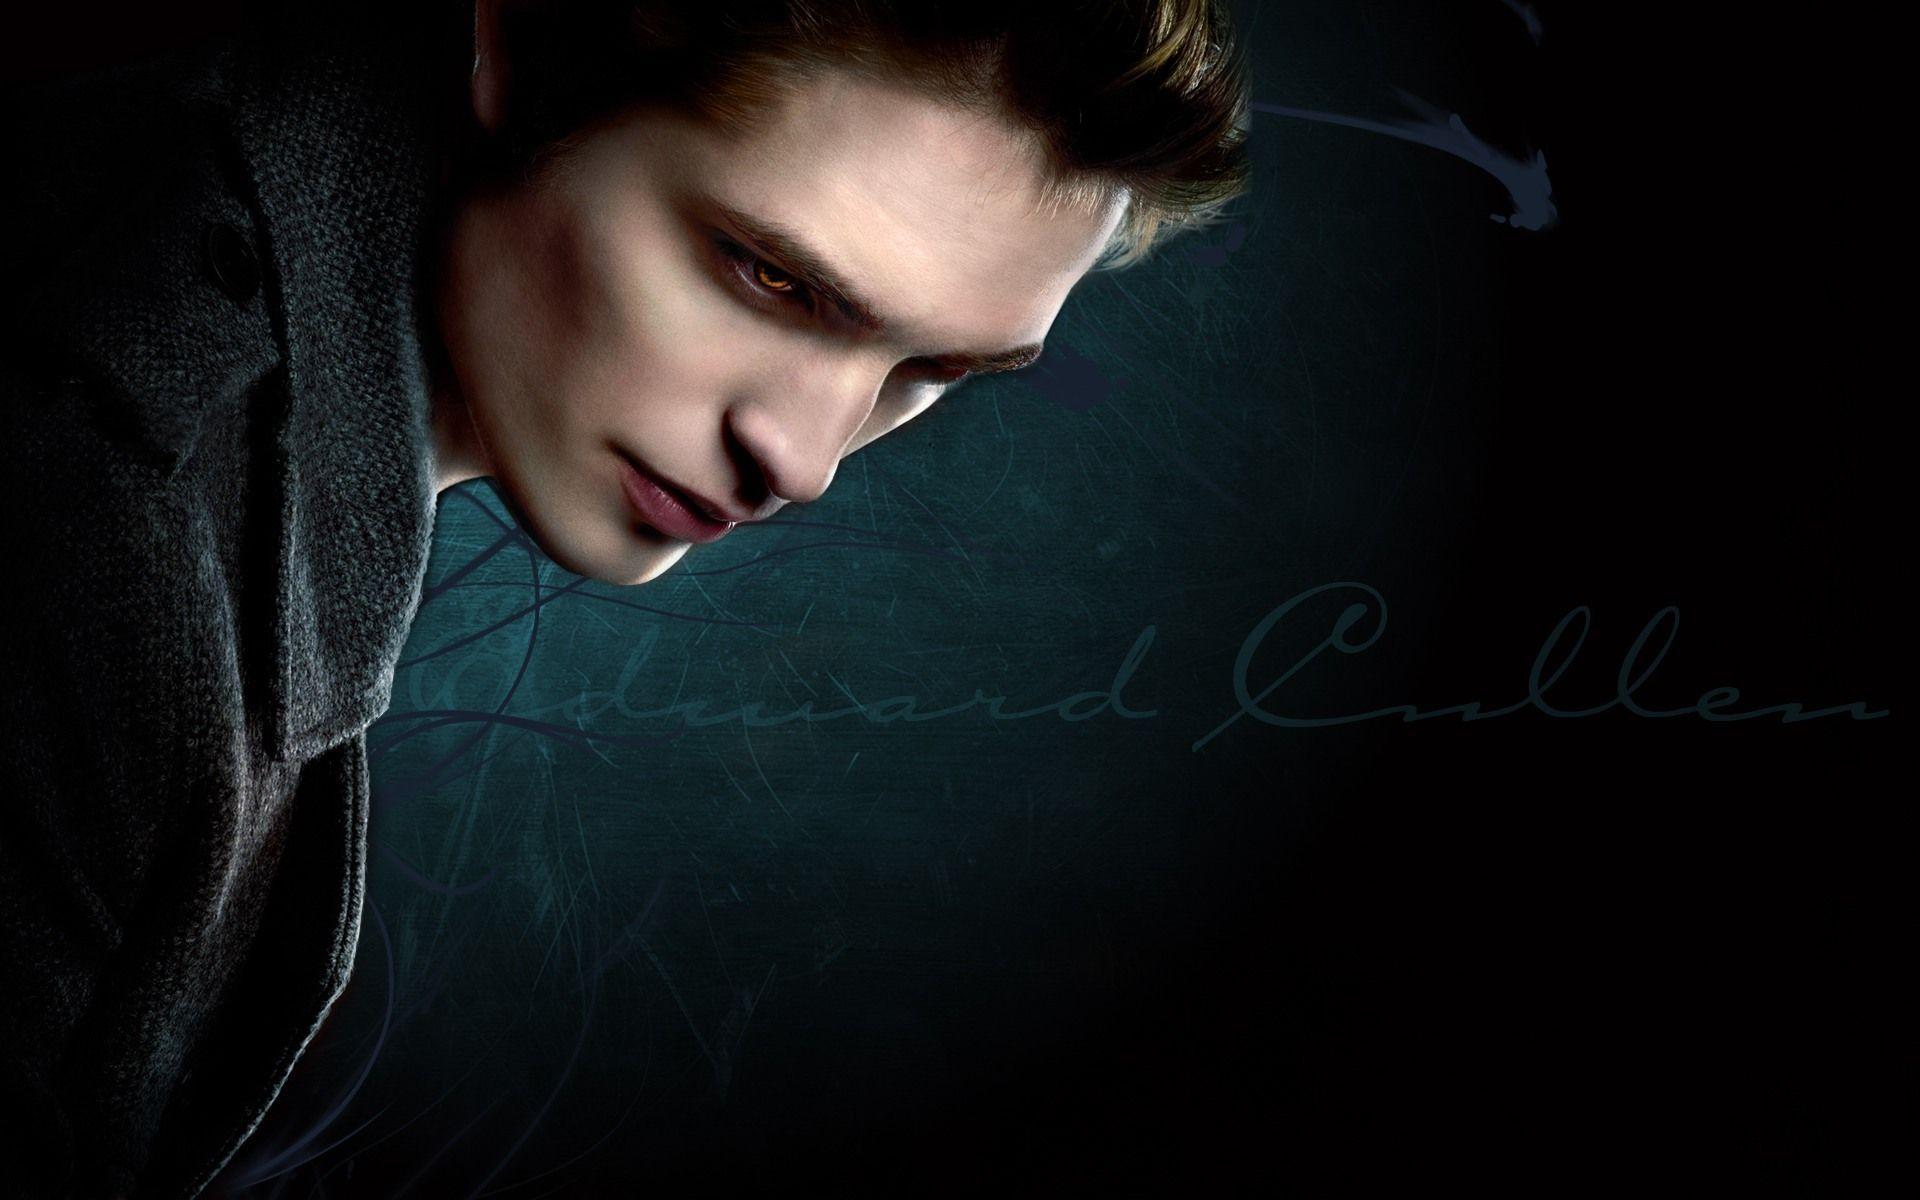 Edward Cullen wallpaper